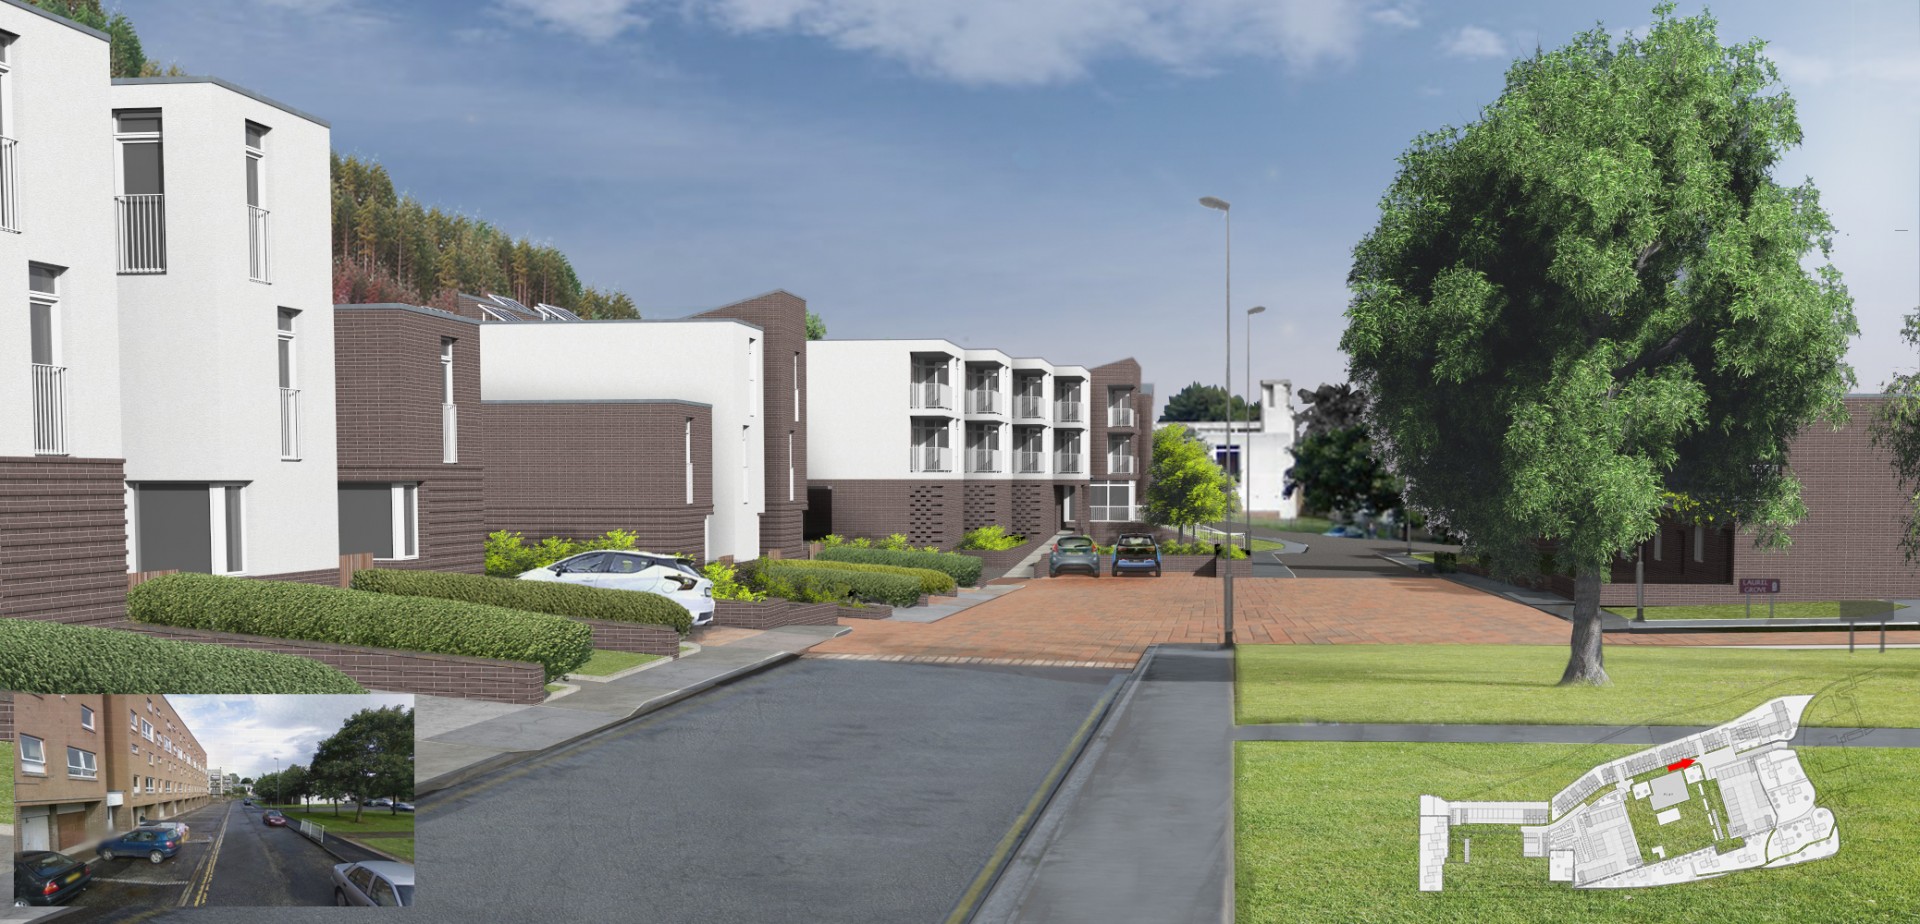 Galashiels estate redevelopment proposals lodged by Waverley